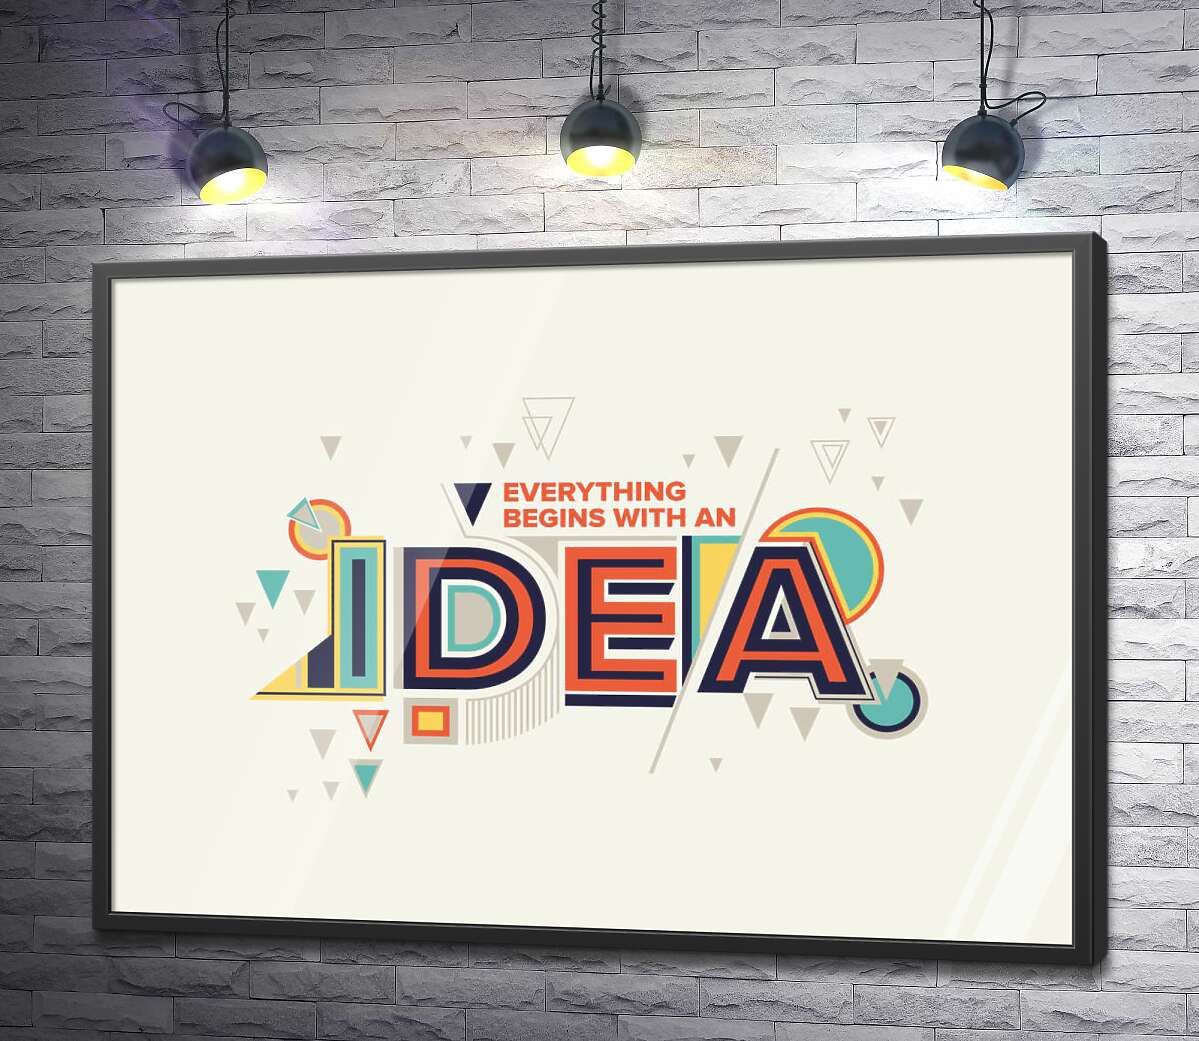 постер Геометрическое оформление фразы "everything begins with an idea"